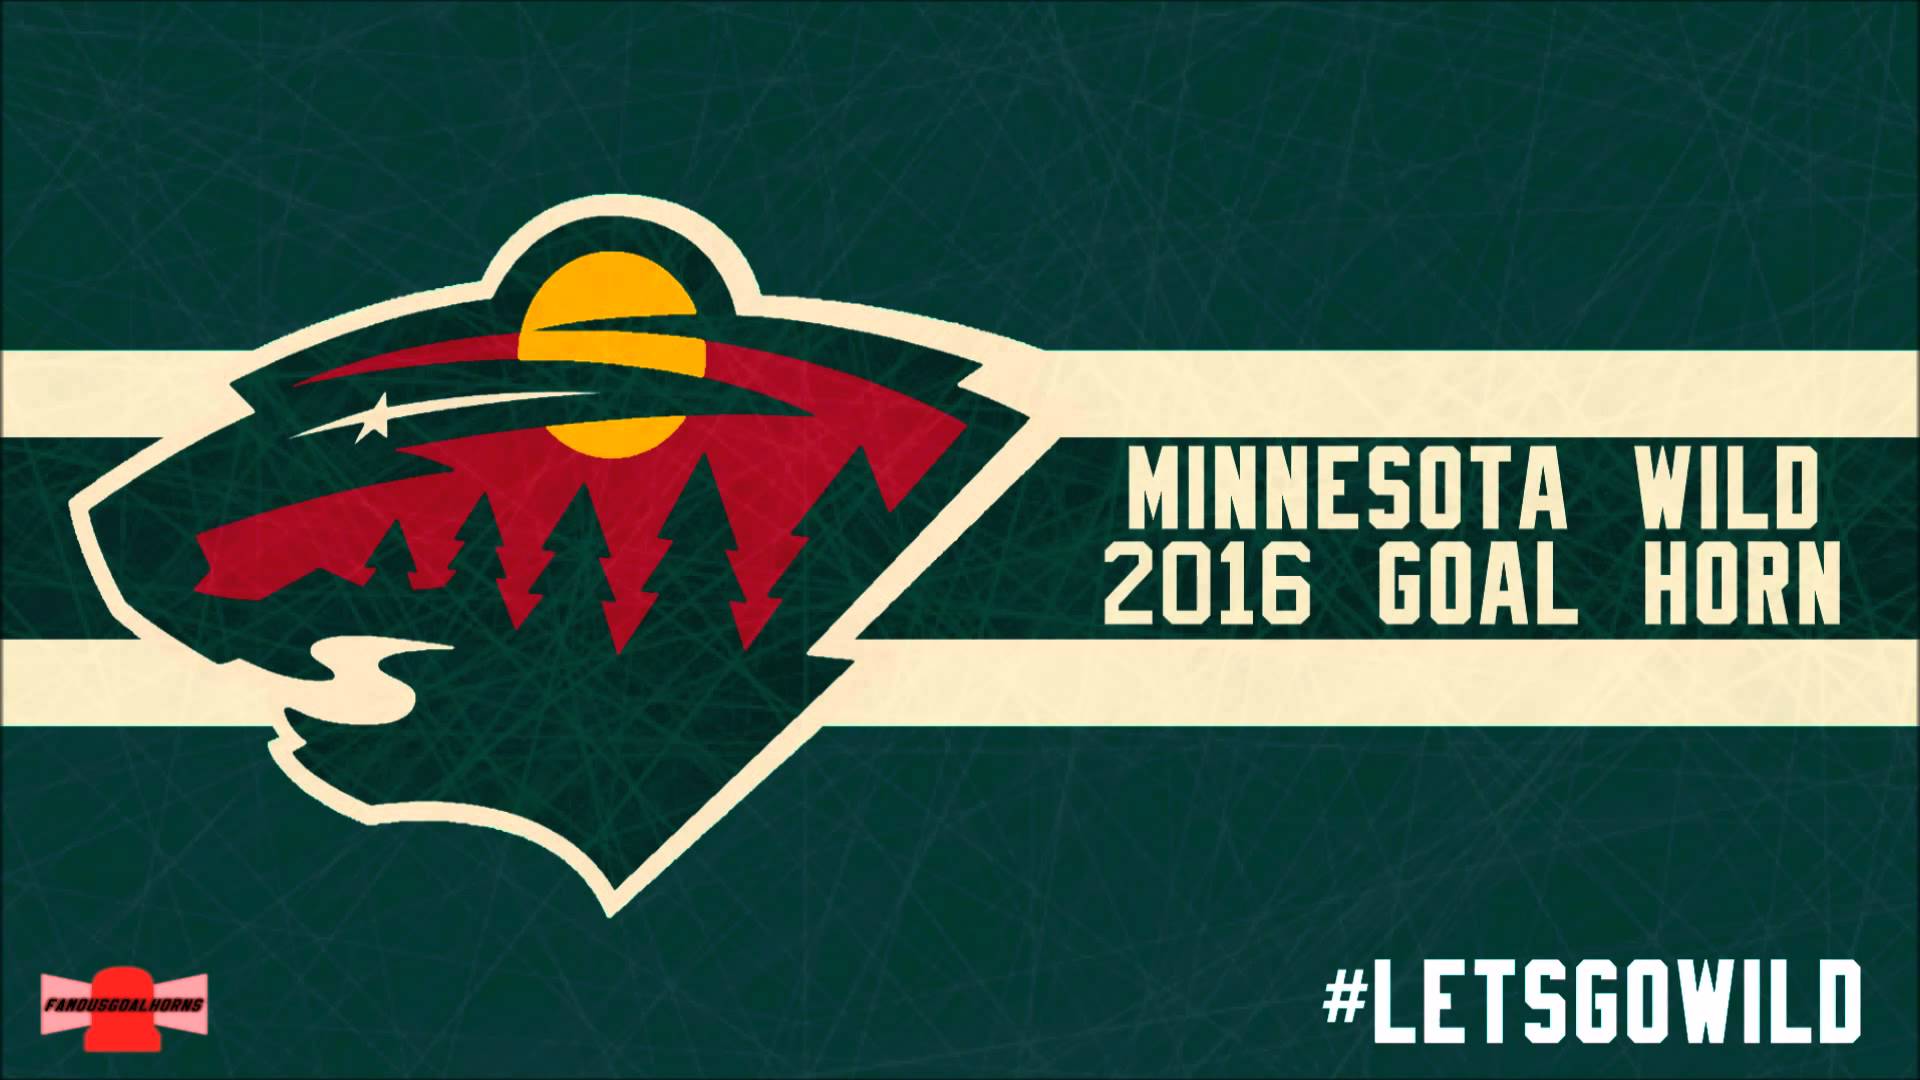 Minnesota Wild 2016 Goal Horn